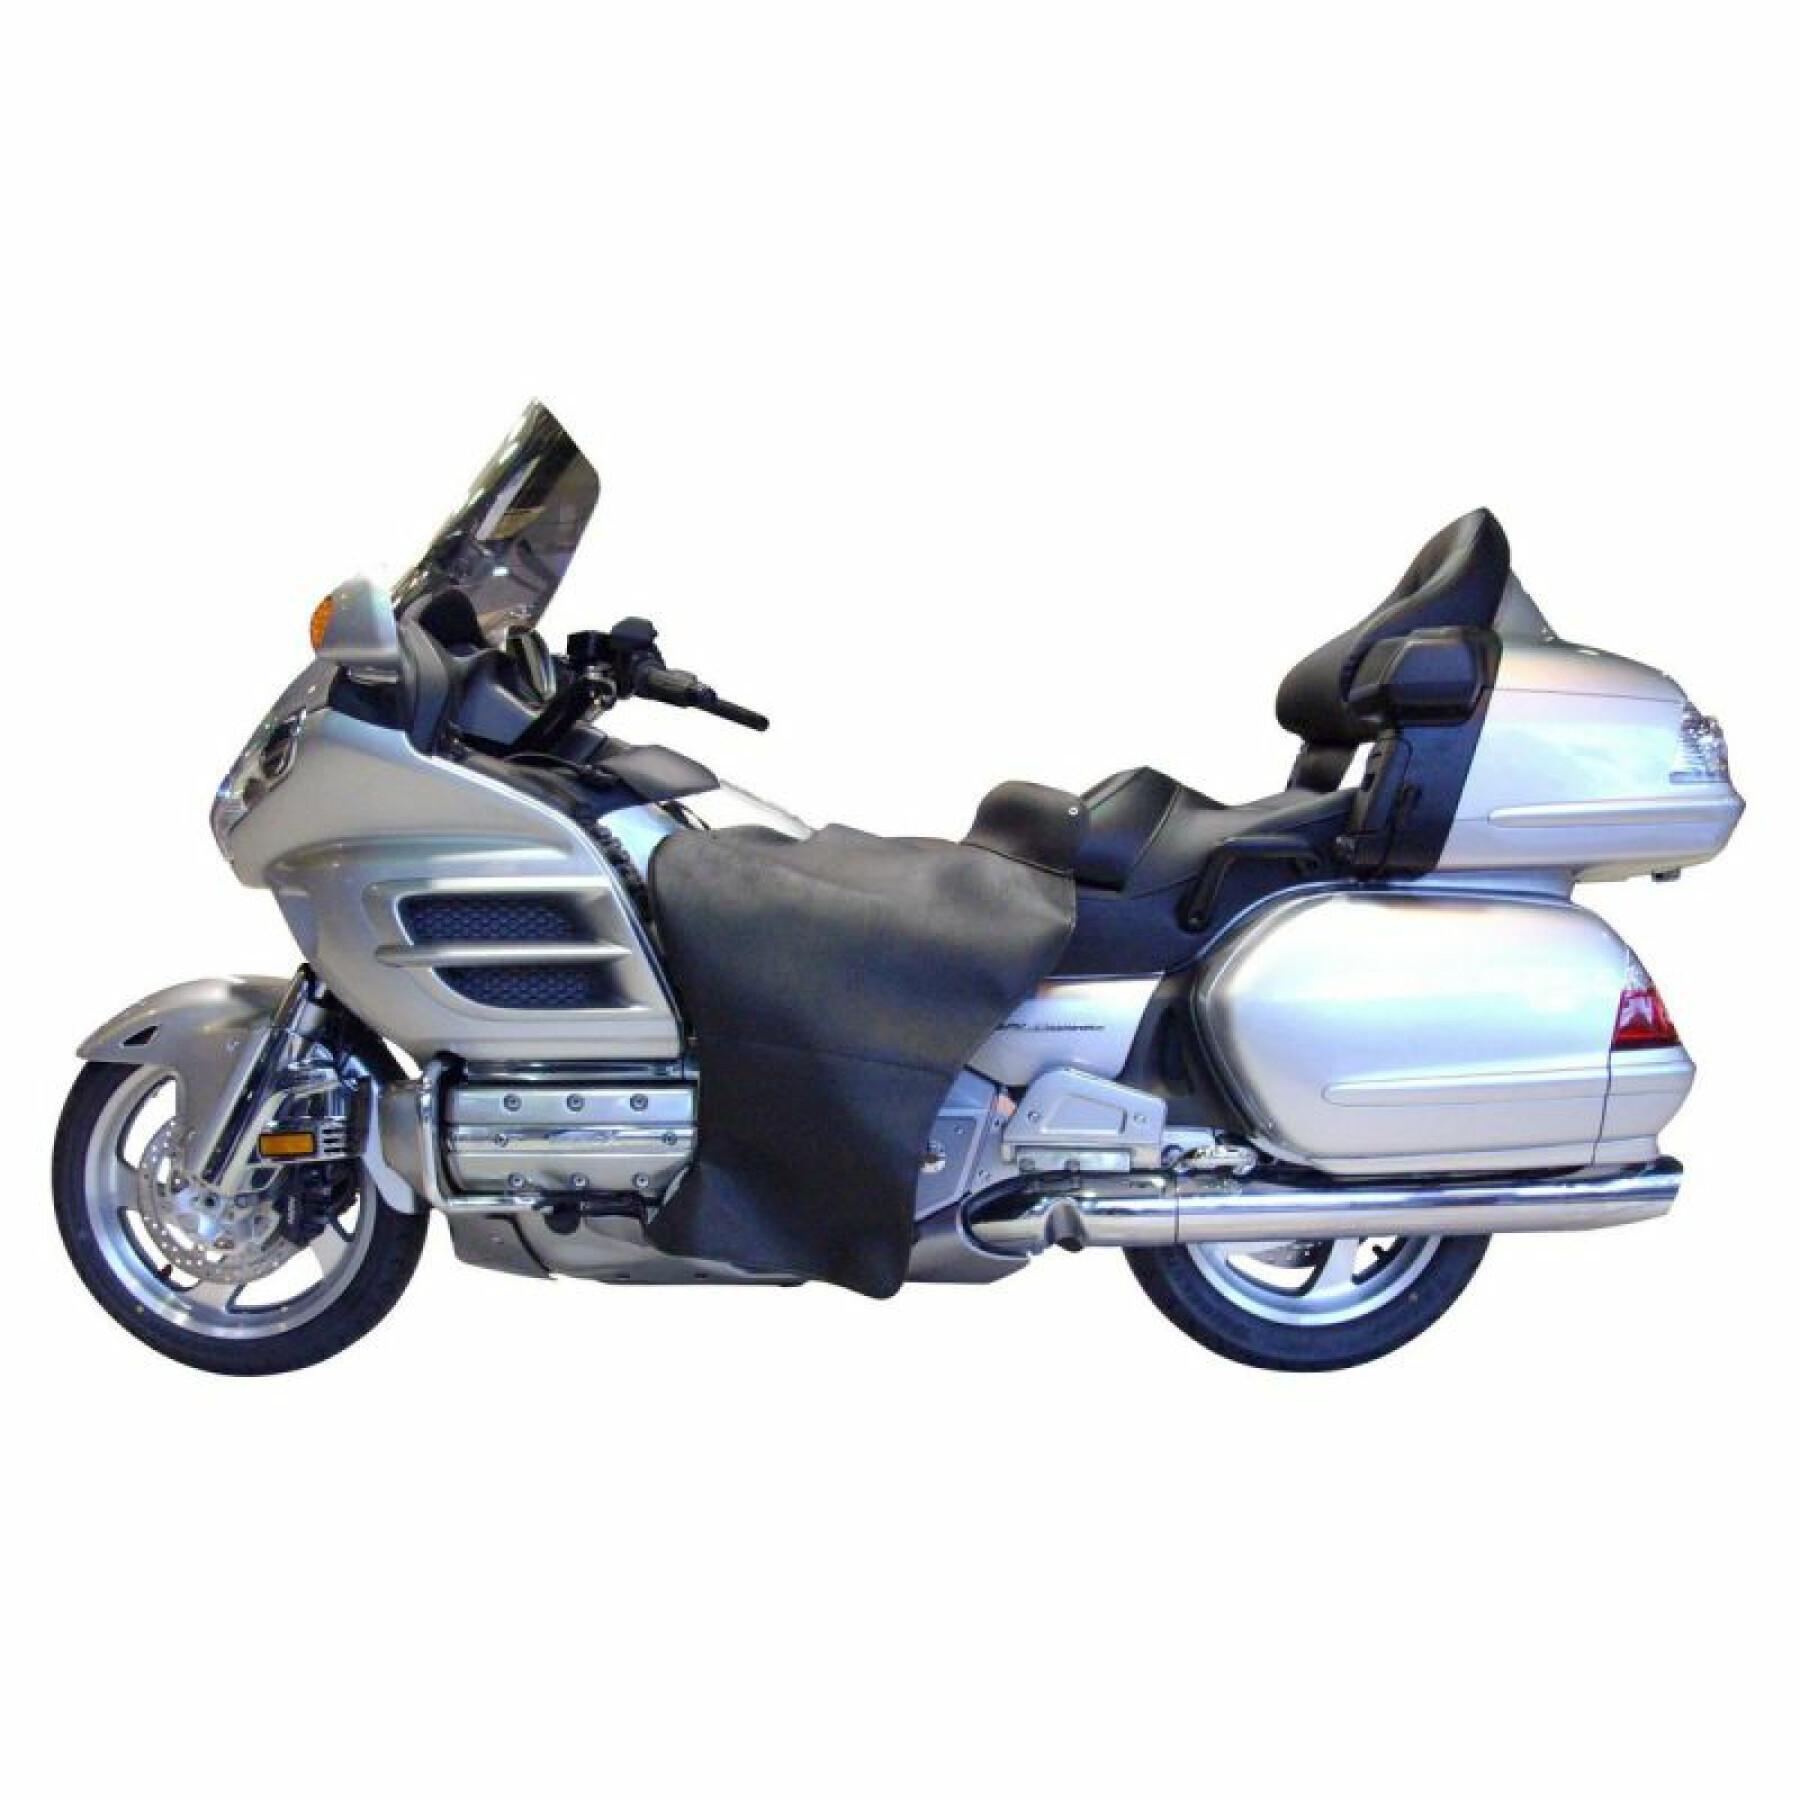 Förkläde för motorcykel Bagster Briant Honda Gl 1800 Air Bag 2007-2011